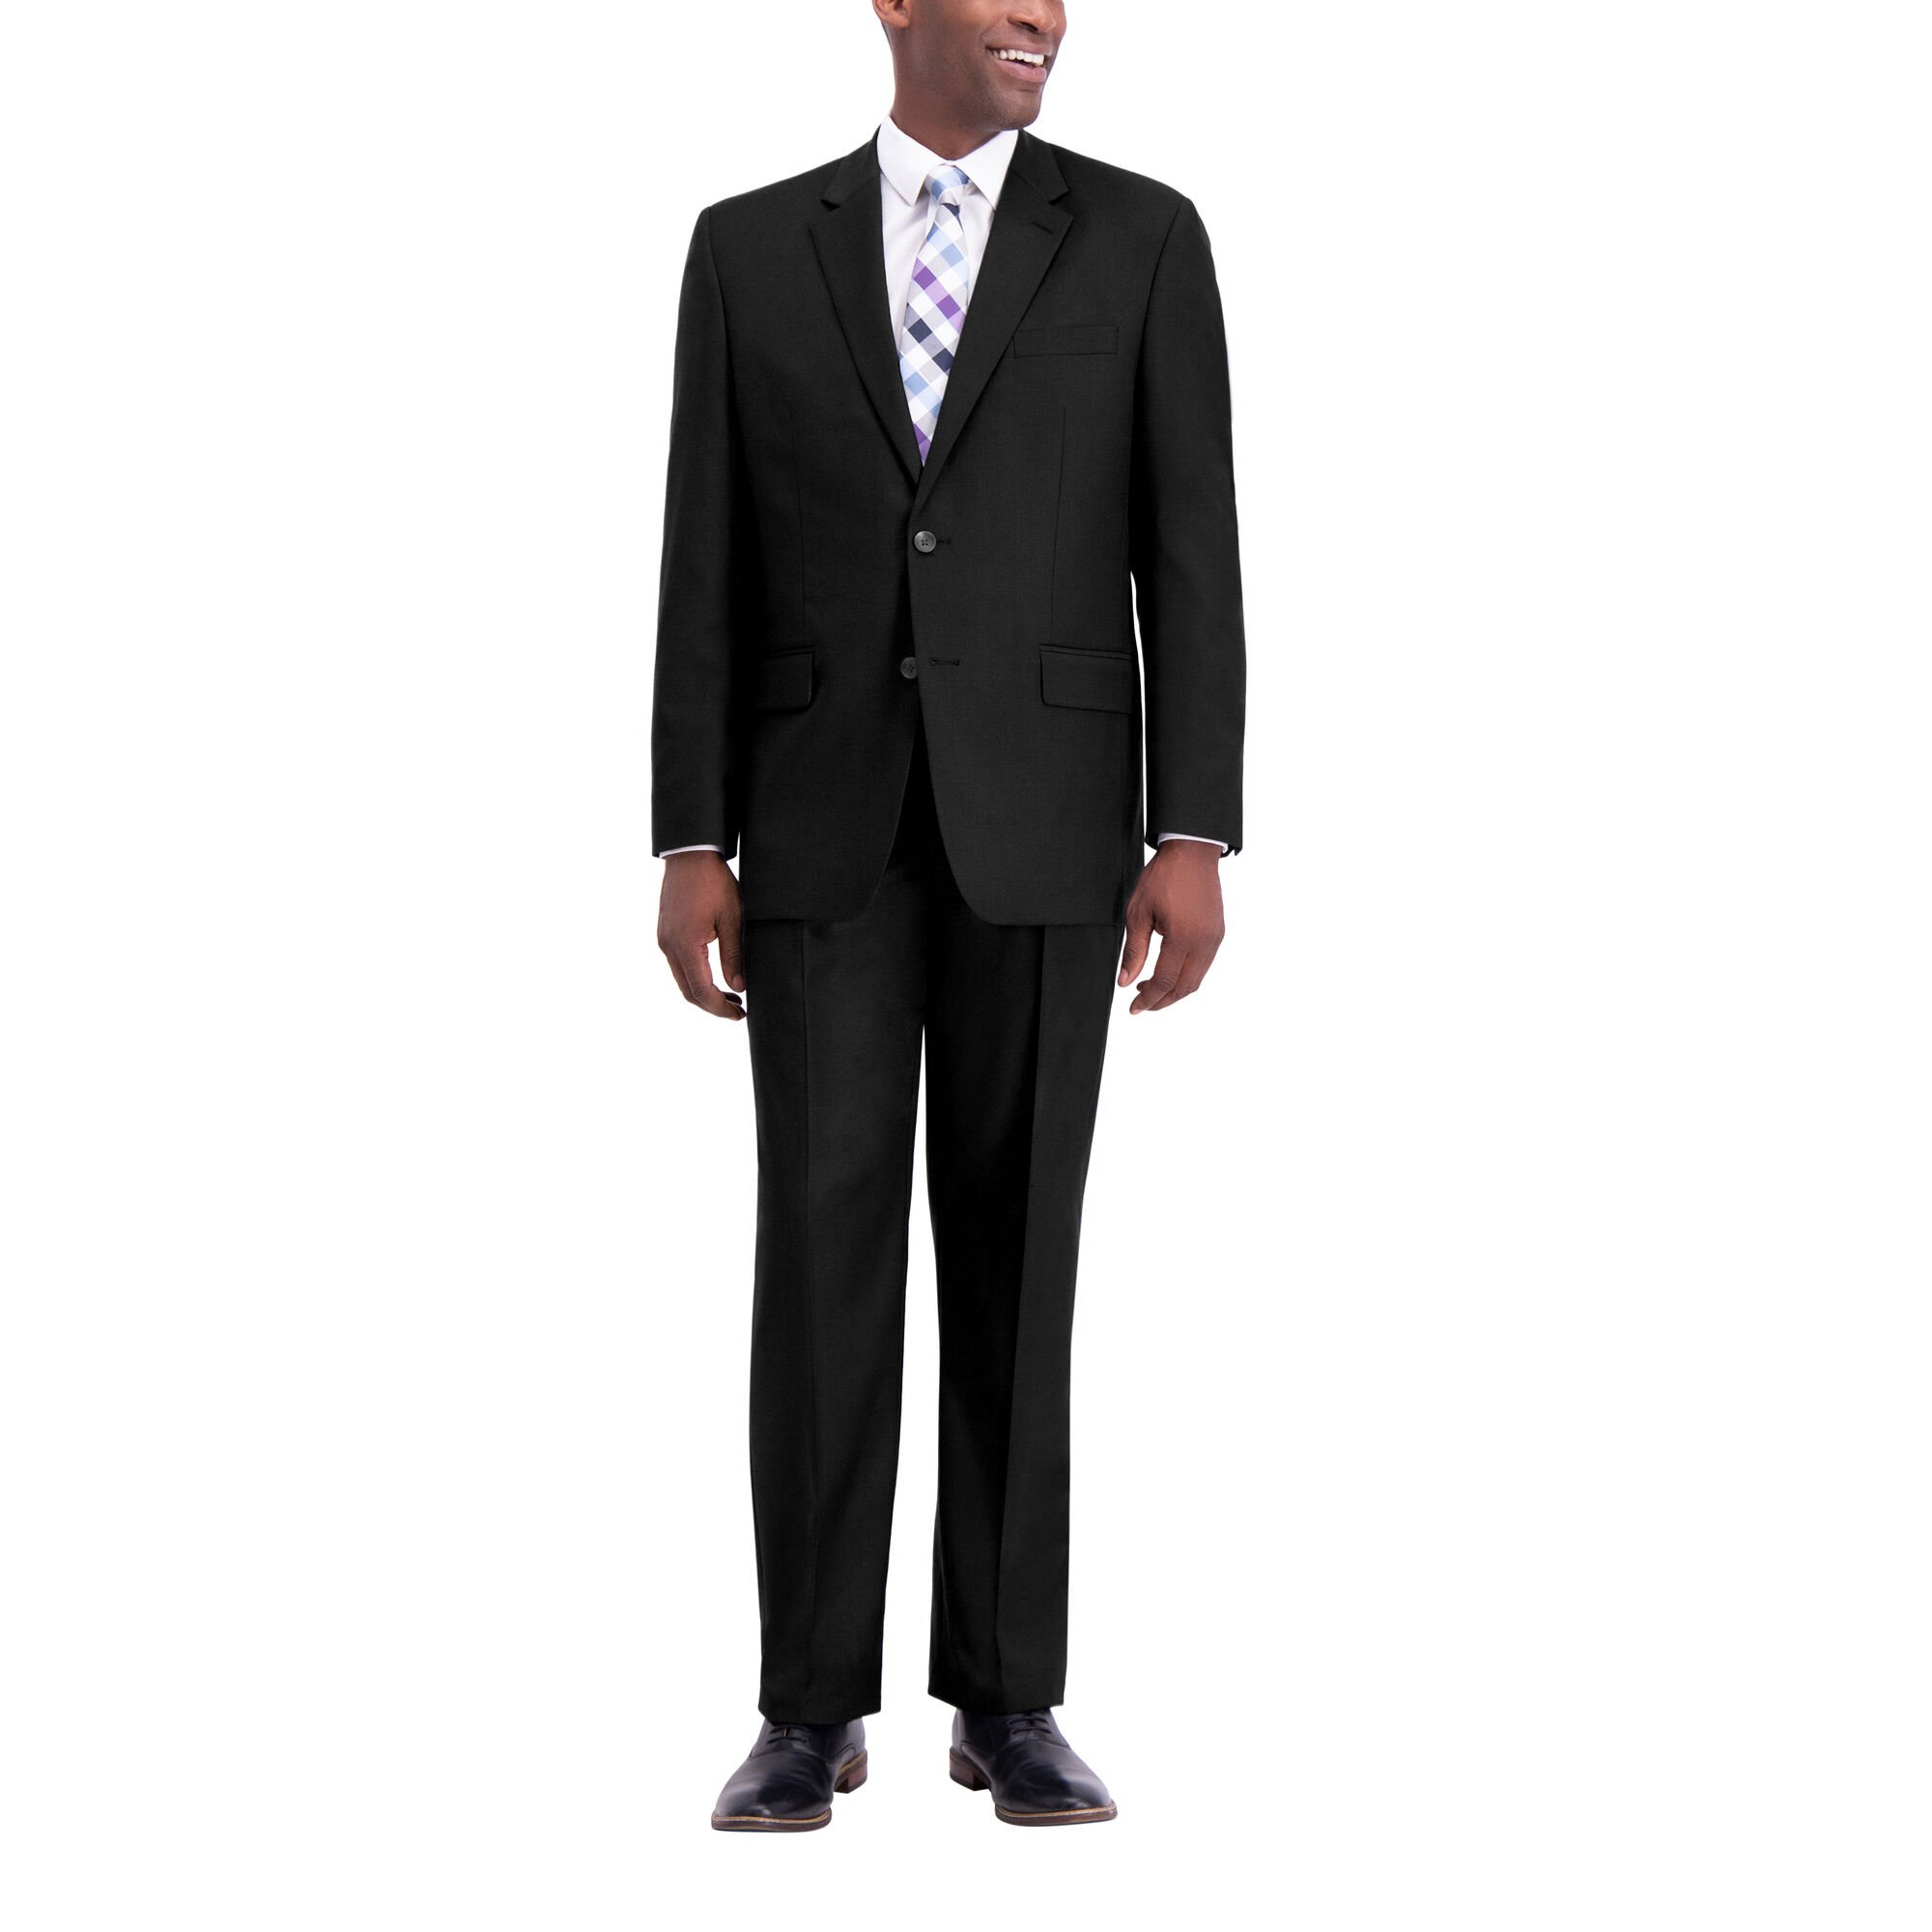 J.M. Haggar Texture Weave Suit Jacket Black (HZ00314 Clothing Suits) photo